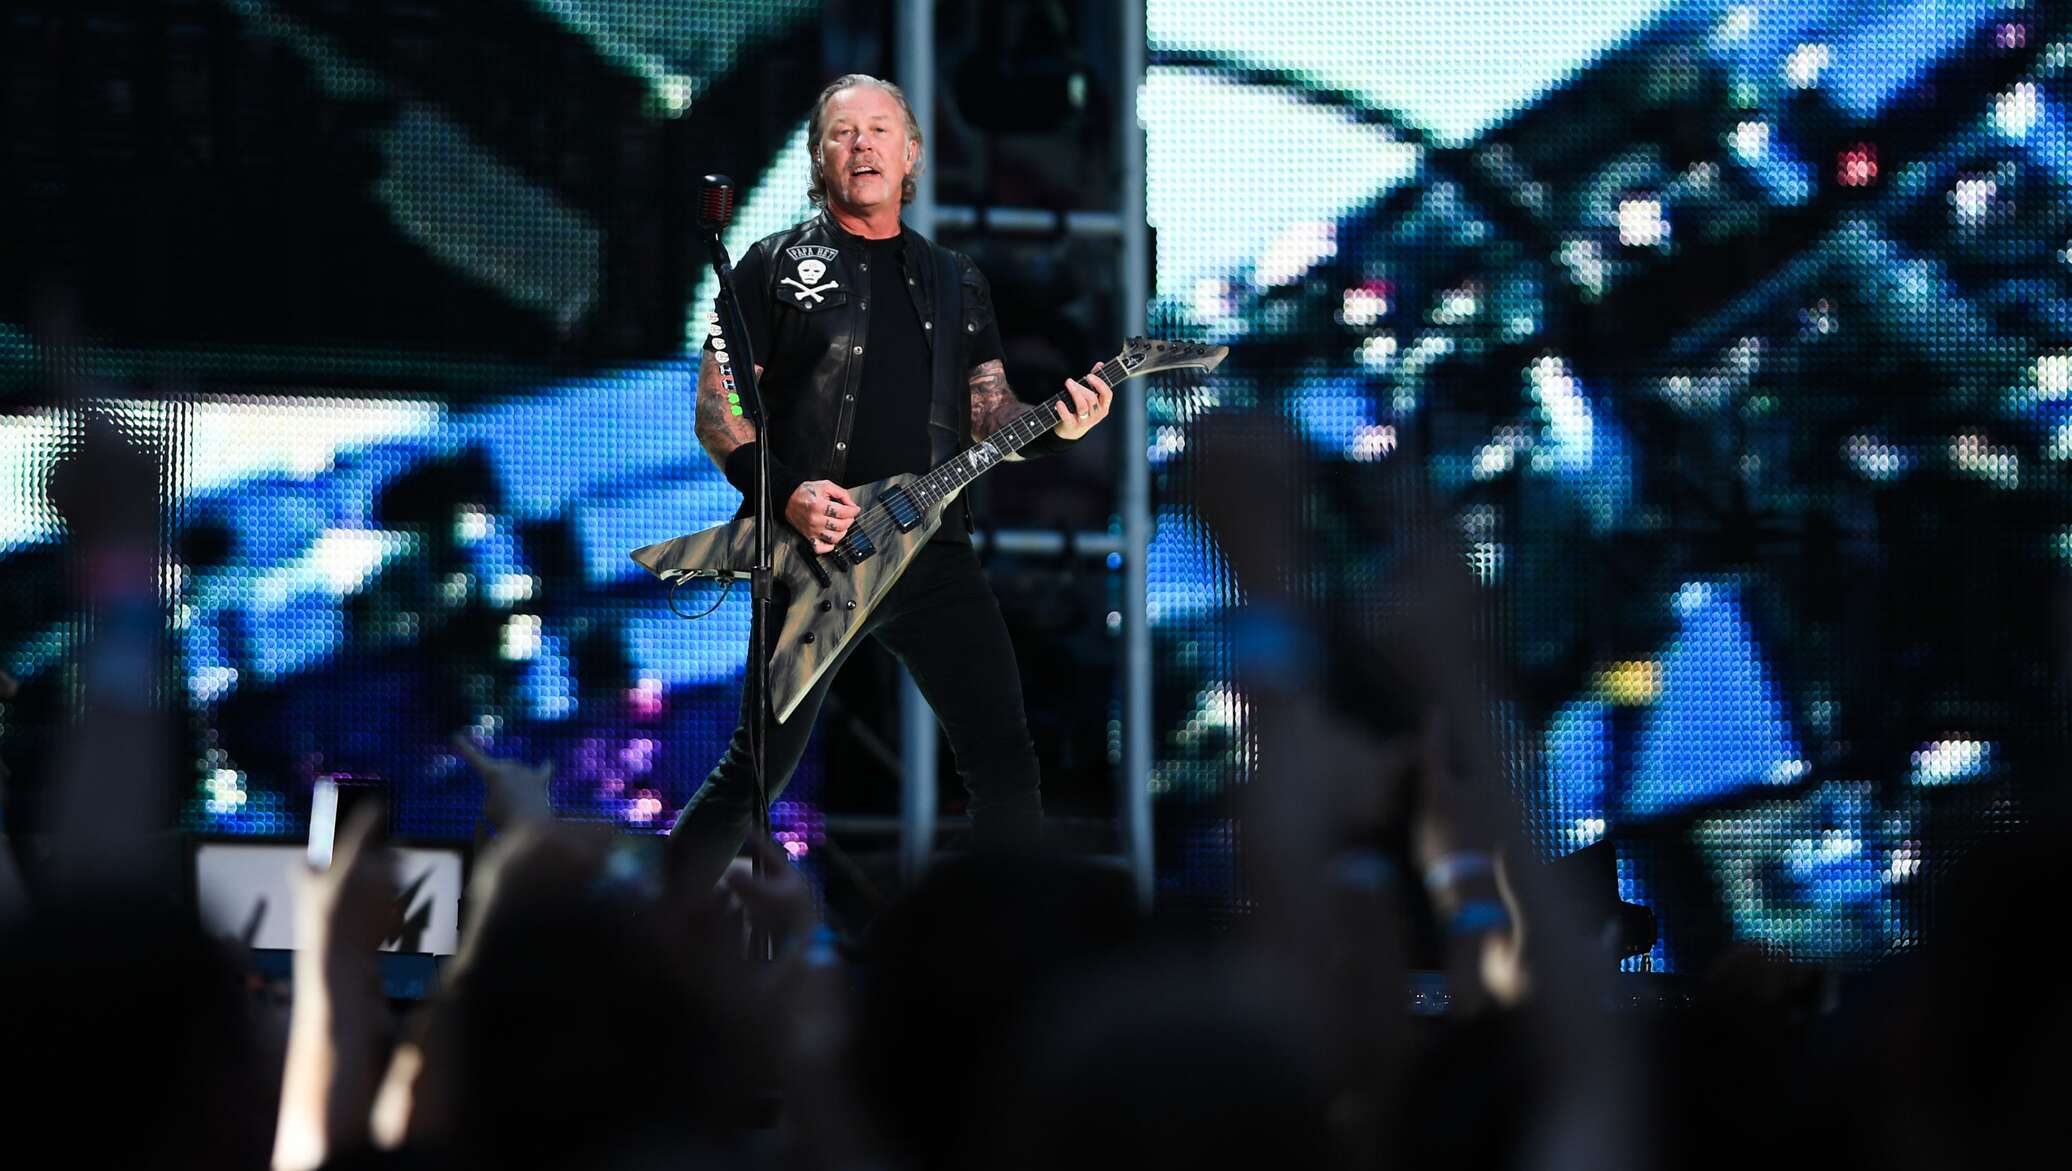 Офицеры в исполнении группы металлика. Metallica WORLDWIRED Tour 2019 Лужники. Металлика концерт в Москве 2019. Концерт металлика в Москве в Лужниках 2019. Концерт группы Metallica в Москве.